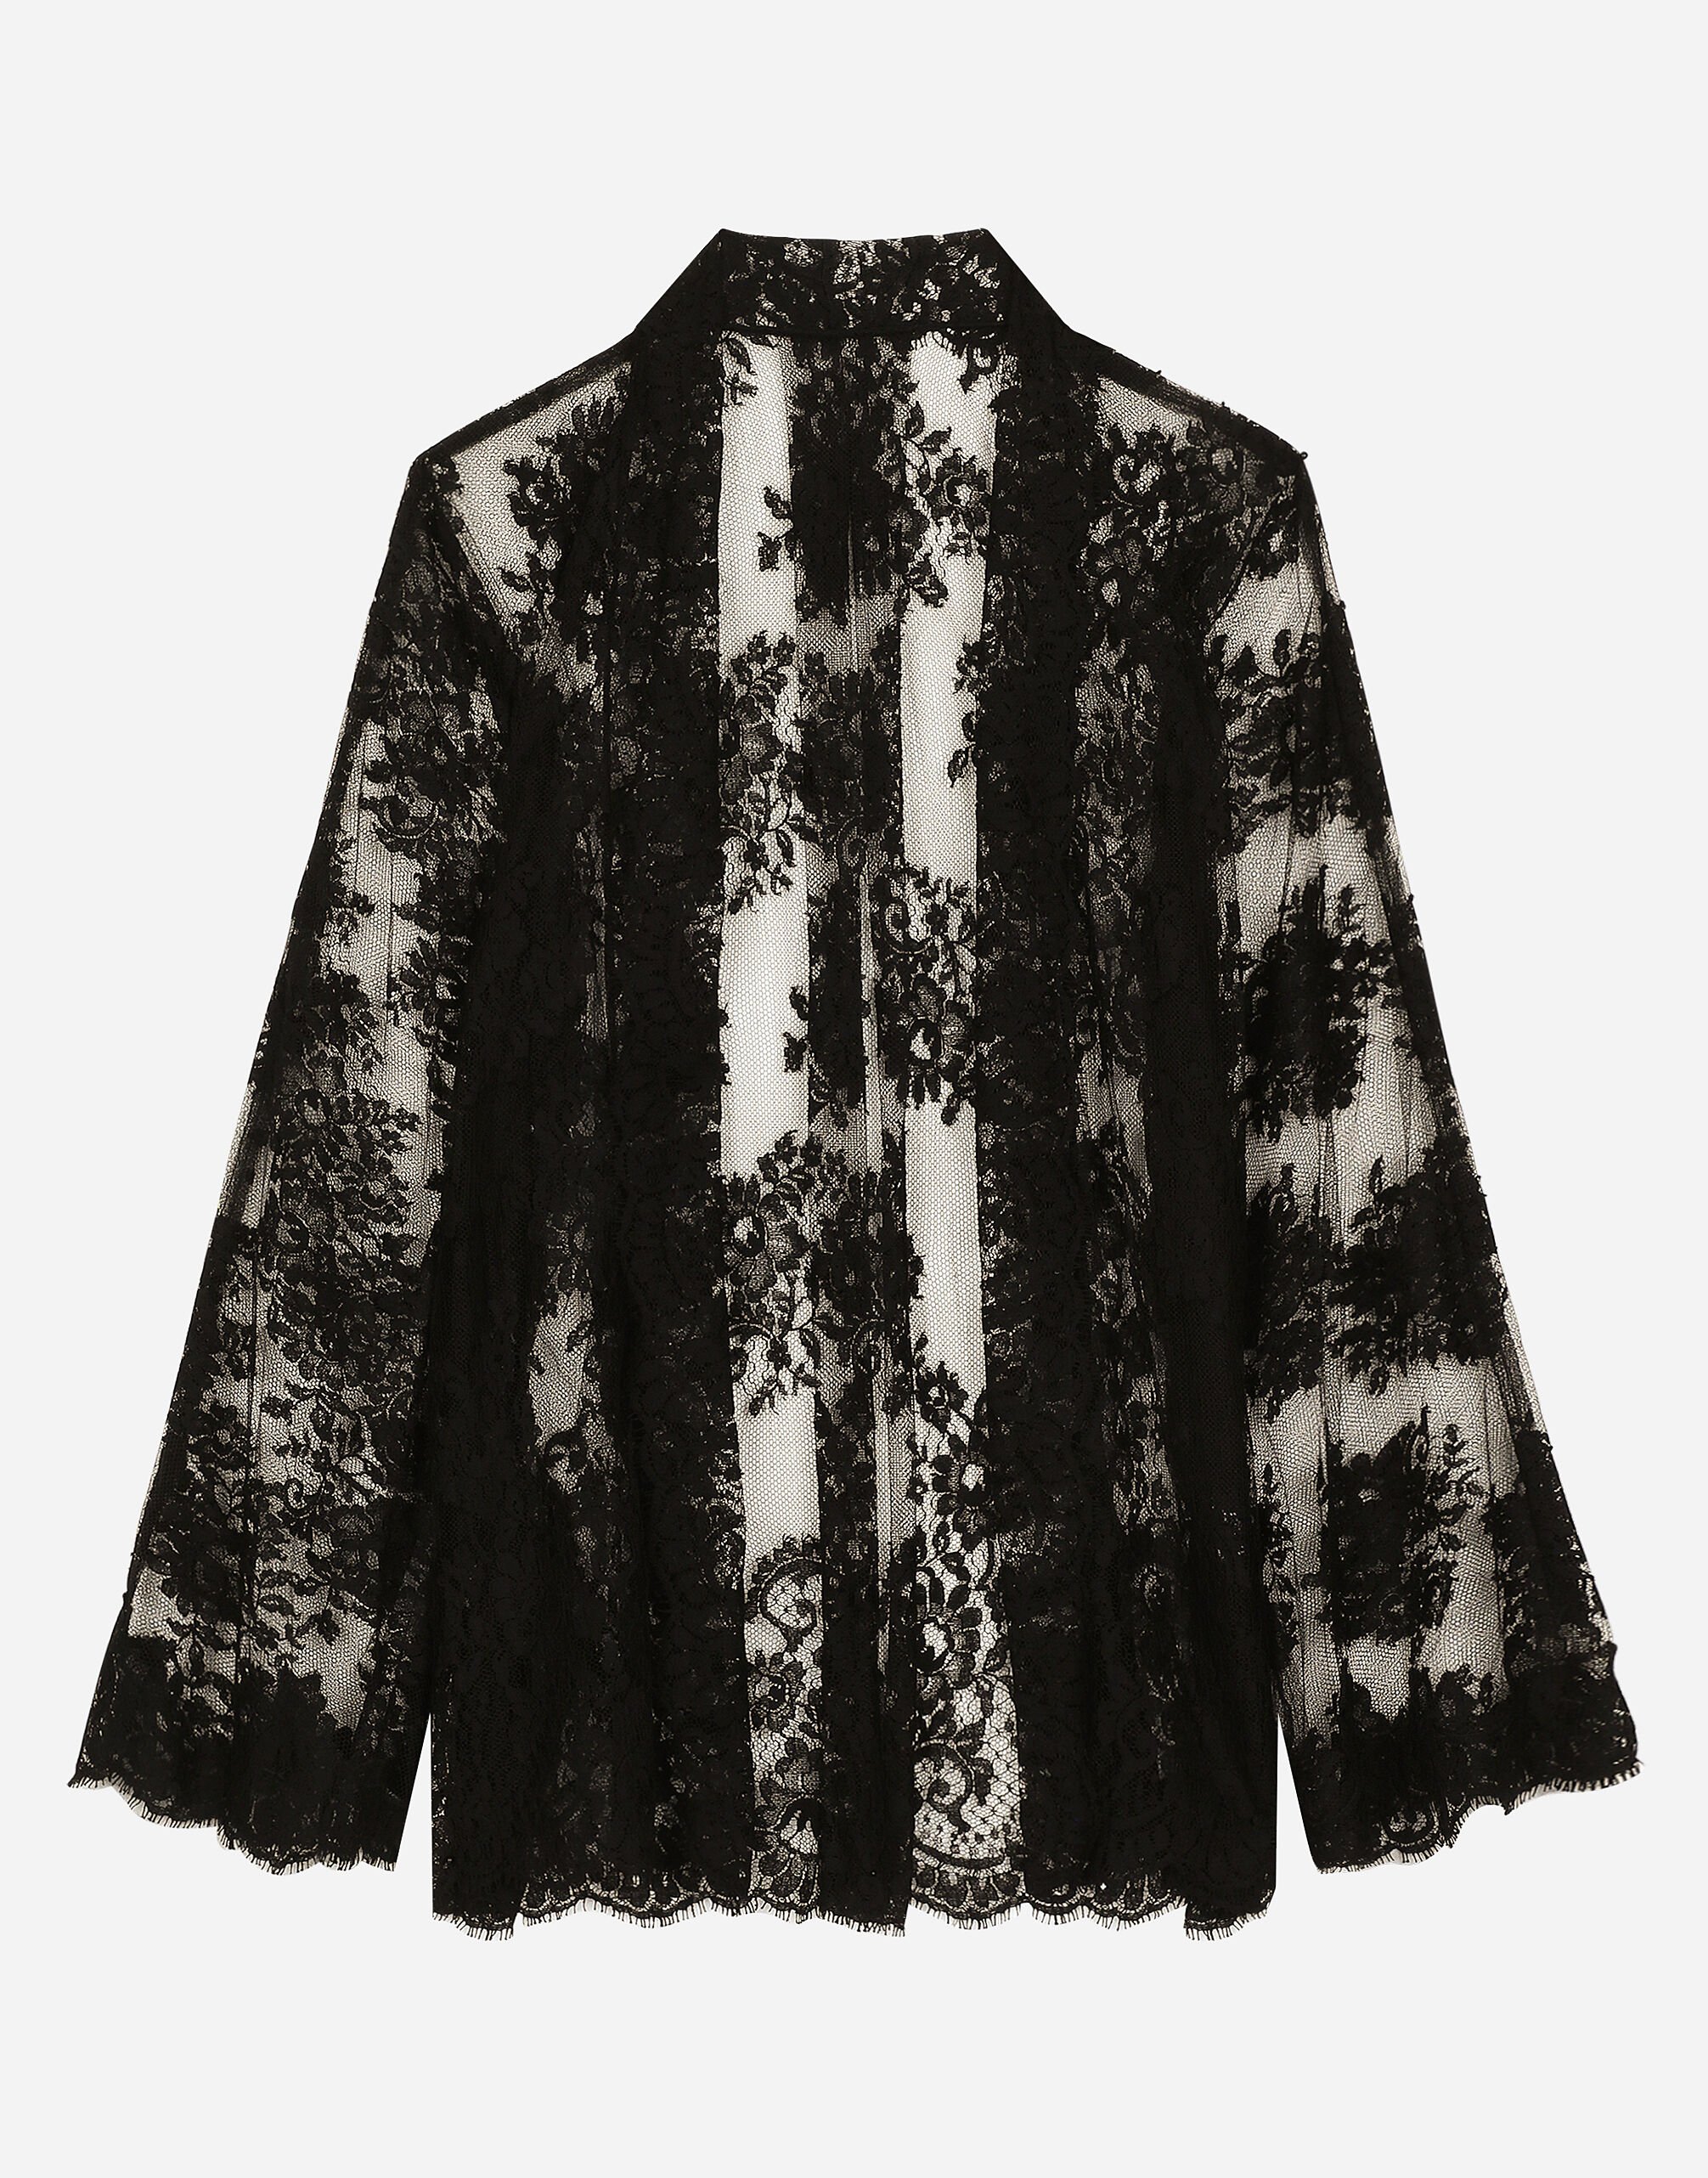 Dolce & Gabbana Floral Chantilly lace kimono shirt Black BB7287A1471